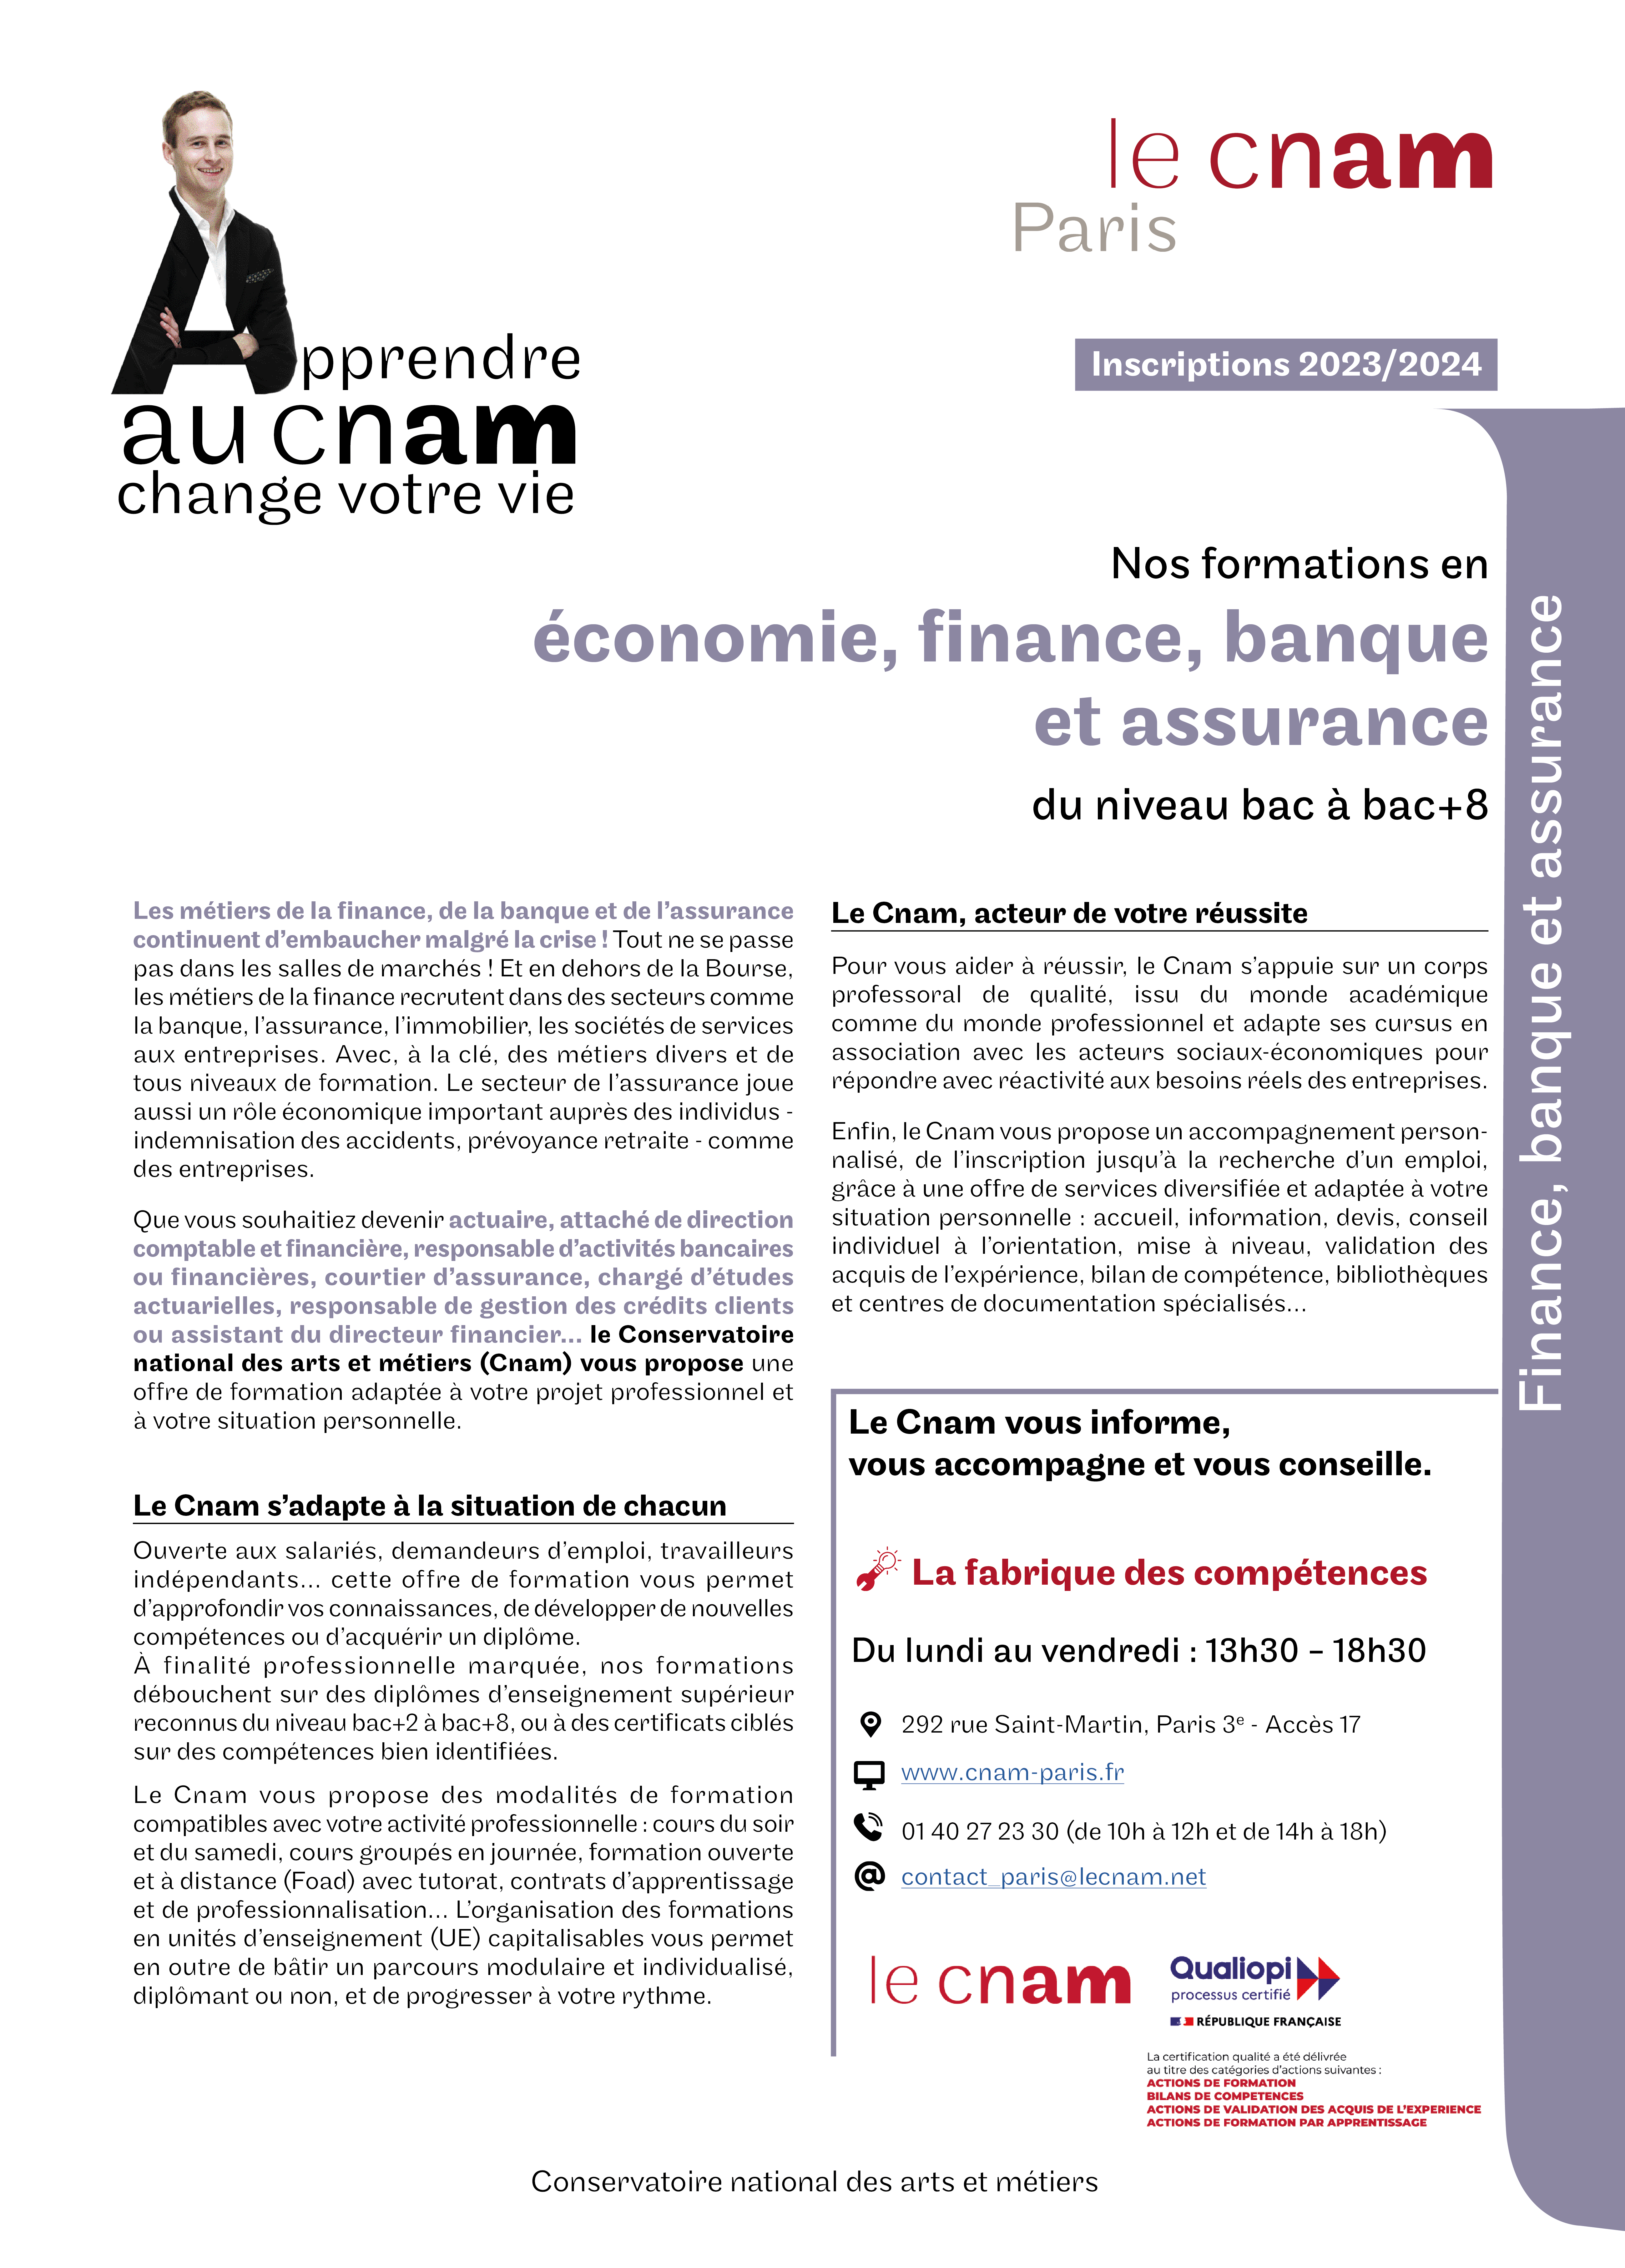 Eco finance, Banques et assurances 23 24